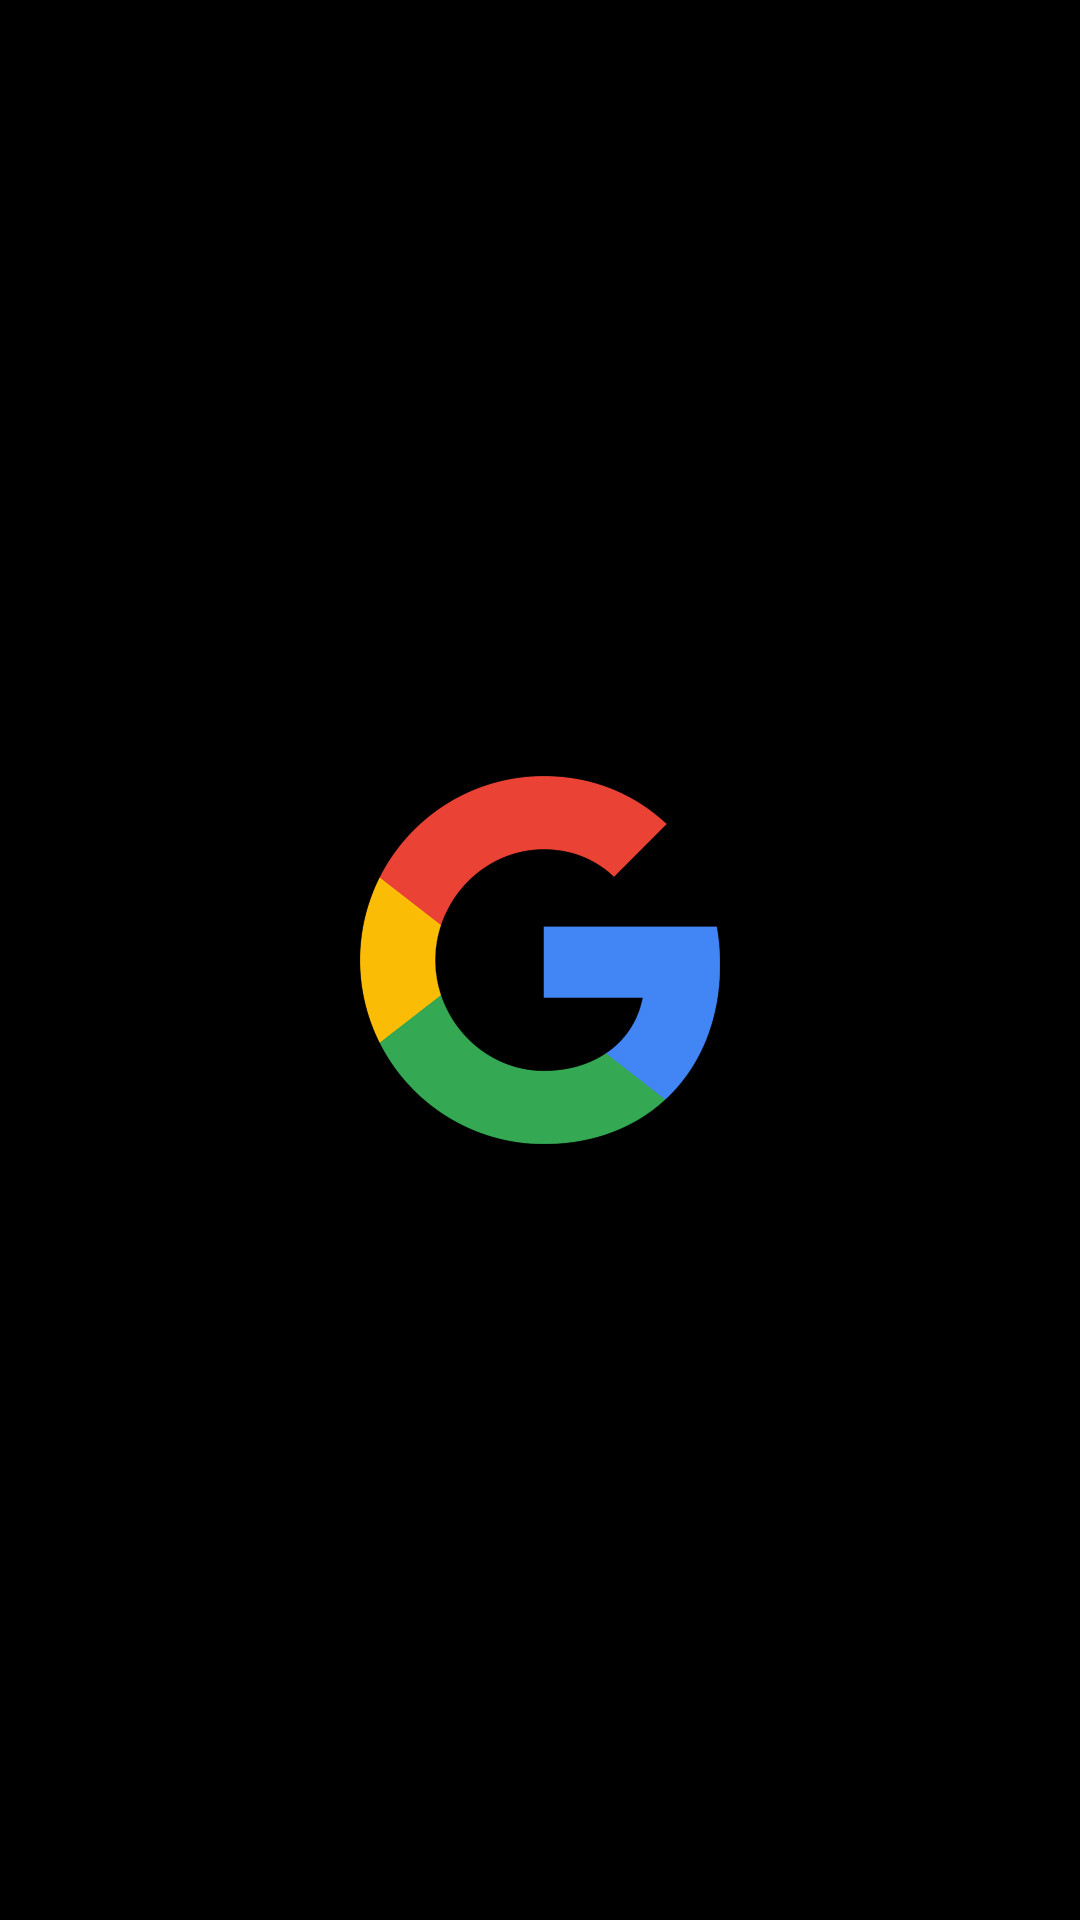 Google Pixel 3a Wallpapers - HD Backgrounds | WallpaperChill.com